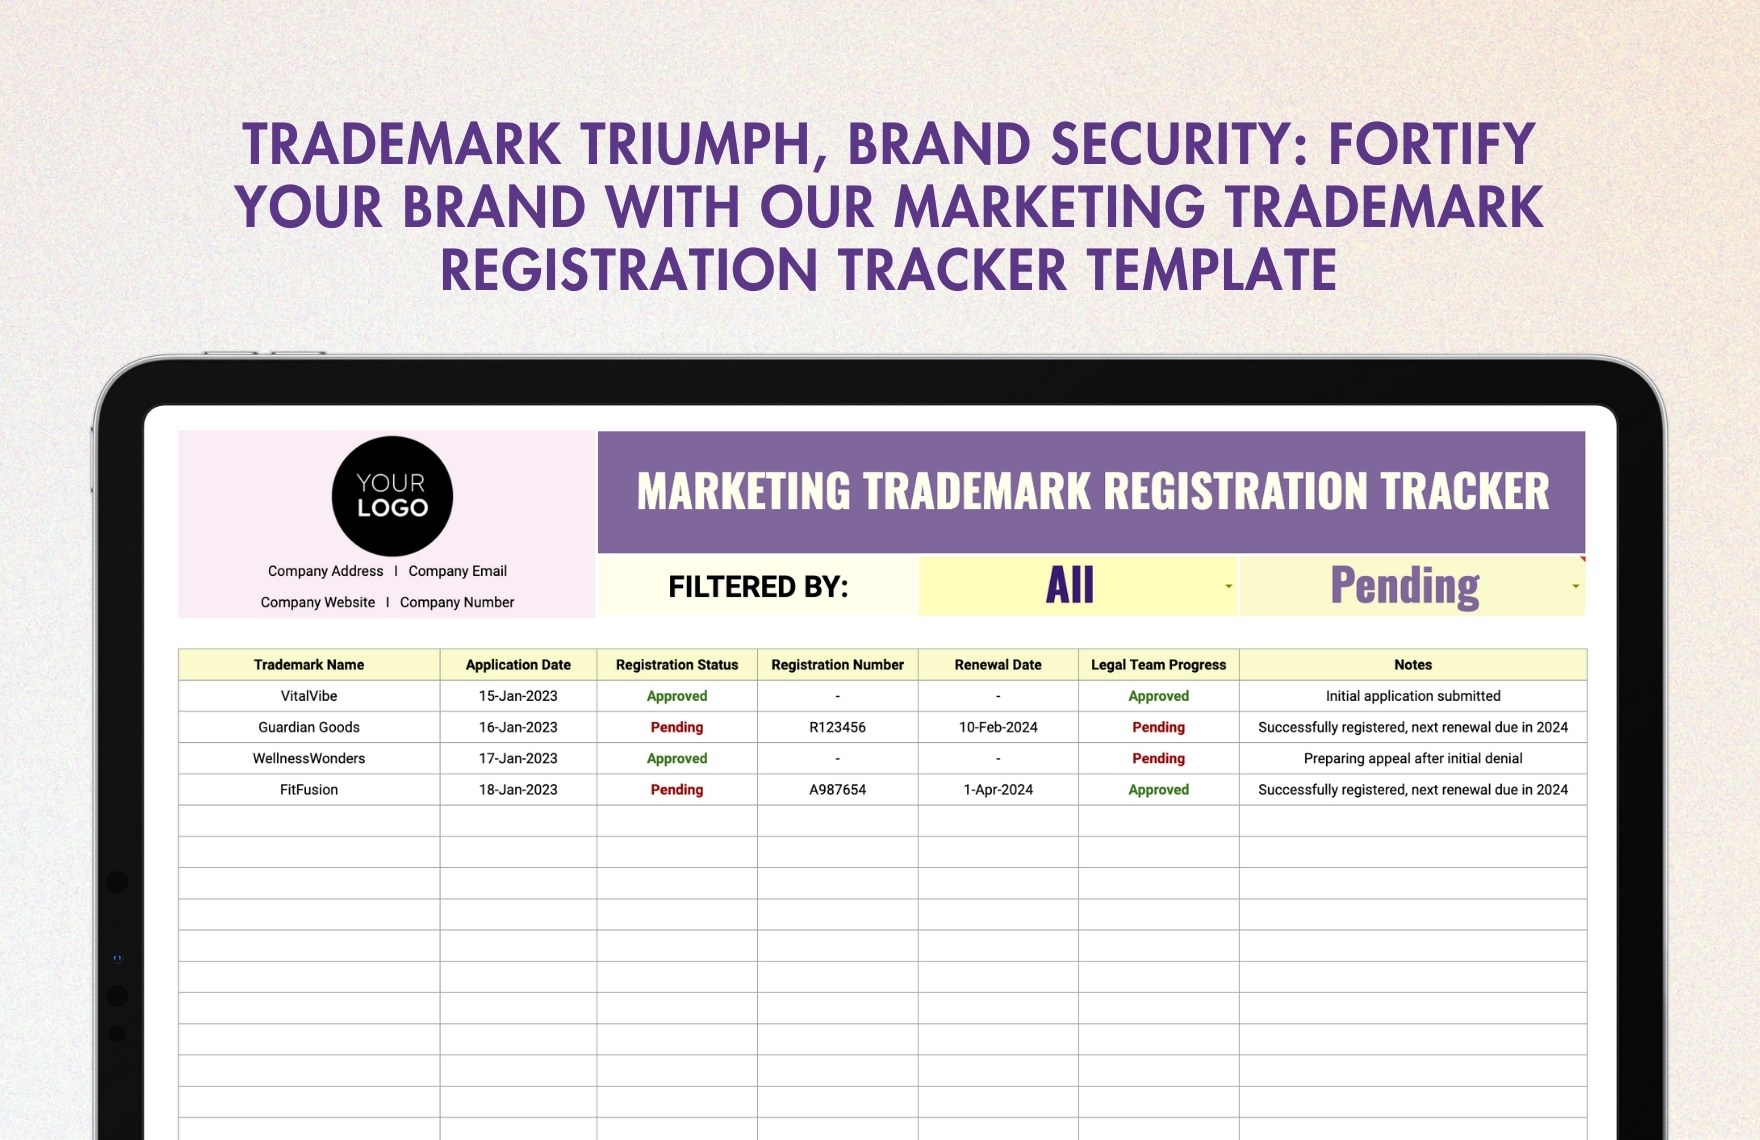 Marketing Trademark Registration Tracker Template